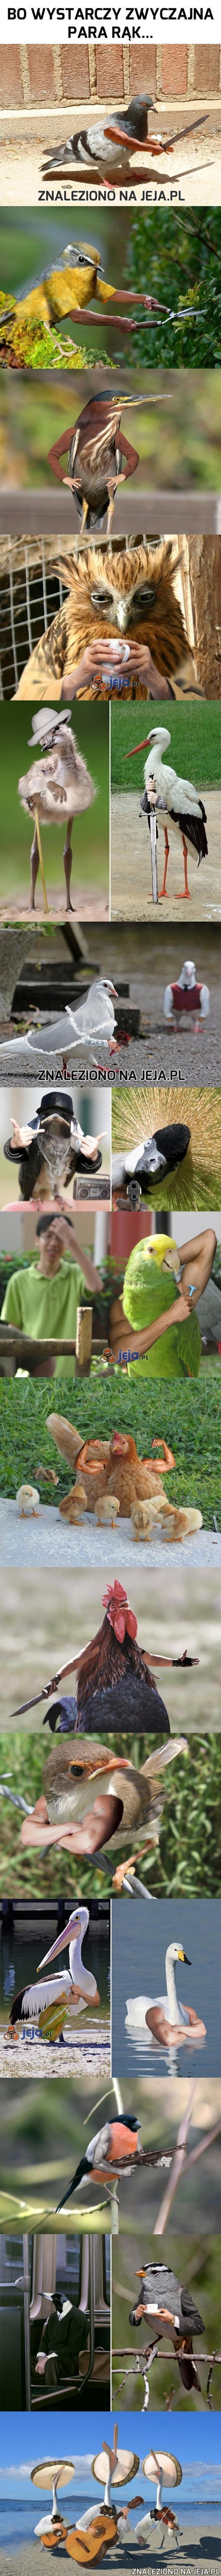 Ptaszki i "zręczny" Photoshop